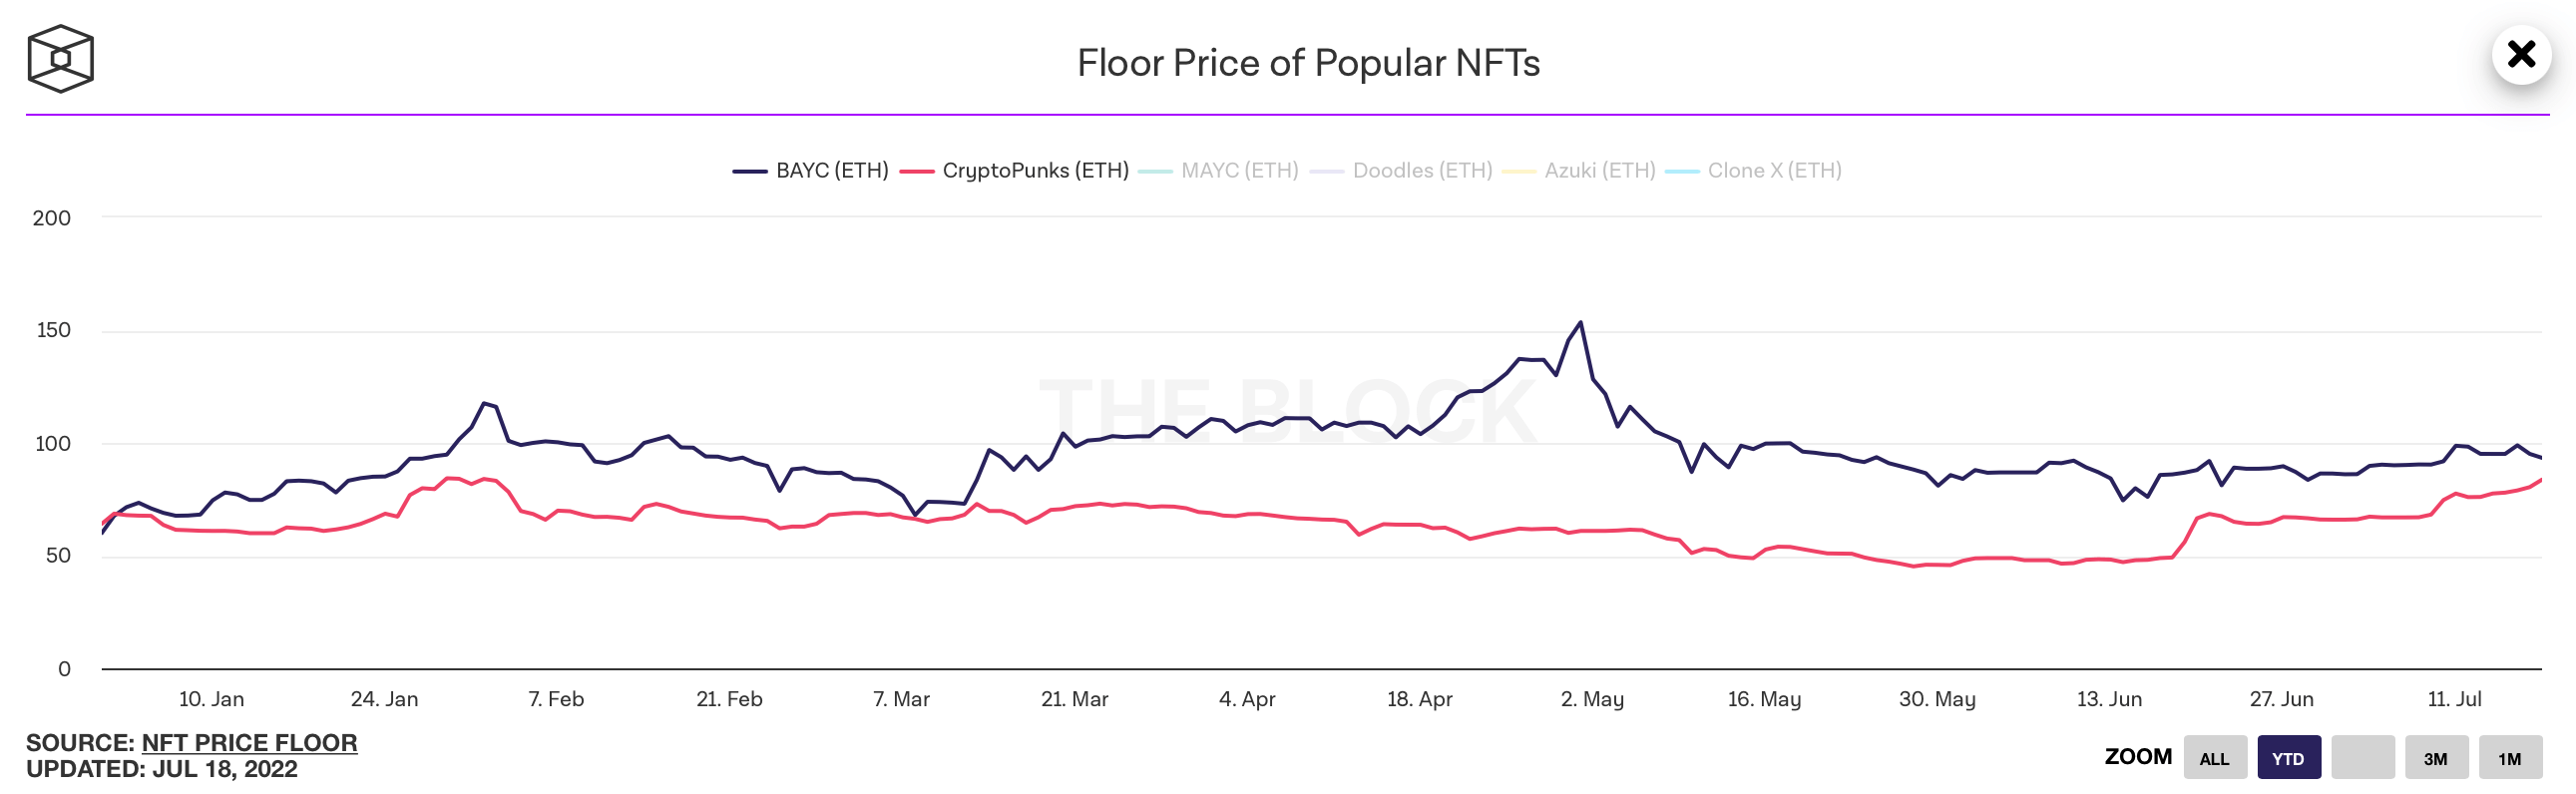 Владелец NFT потерял 7 миллионов долларов на его продаже, но остался в плюсе. Как это возможно? Минимальная стоимость NFT-коллекций BAYC (синим) и Криптопанки (красным). Фото.